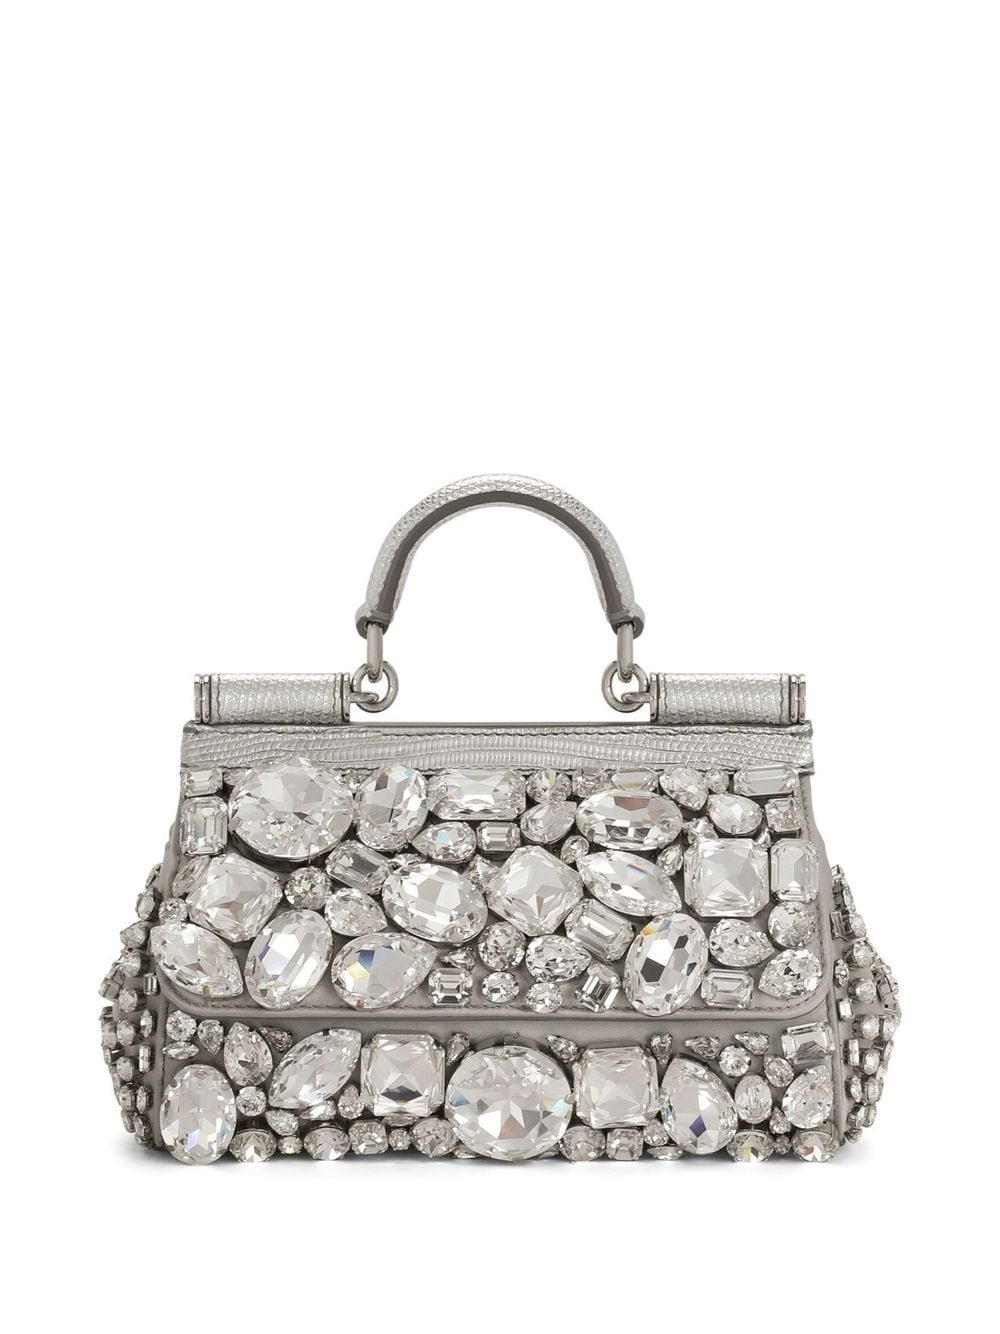 Dolce & Gabbana Kim Dolce&gabbana Small Sicily Satin Top-handle Bag In Silver